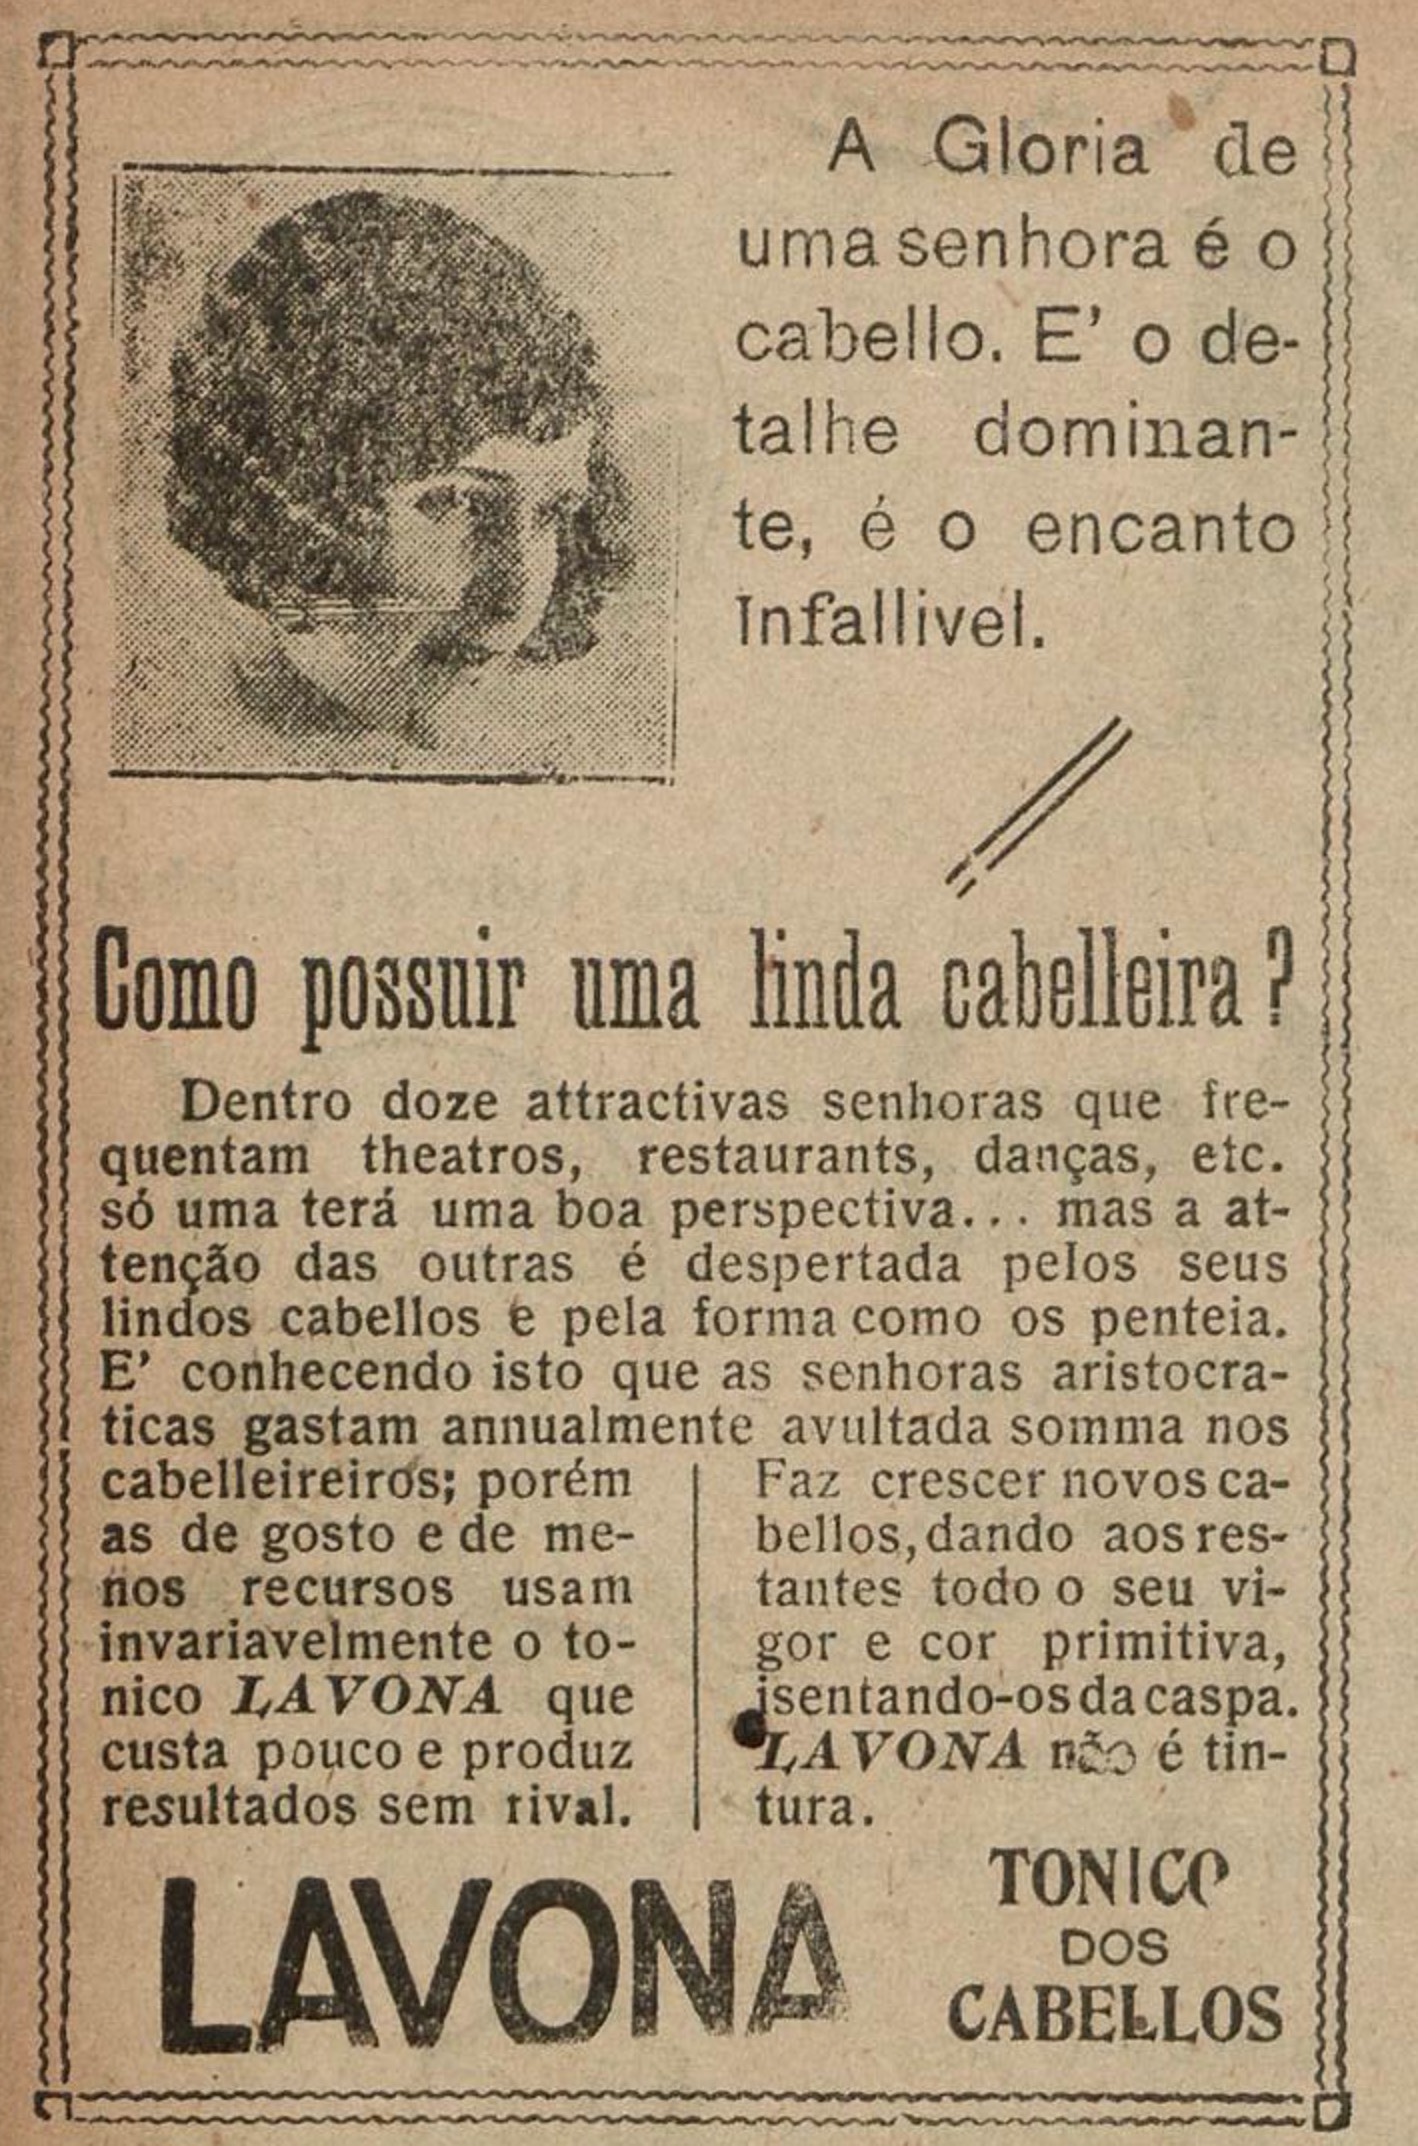 Propaganda veiculada em 1925 promovia o tônico Lavona para cabelos